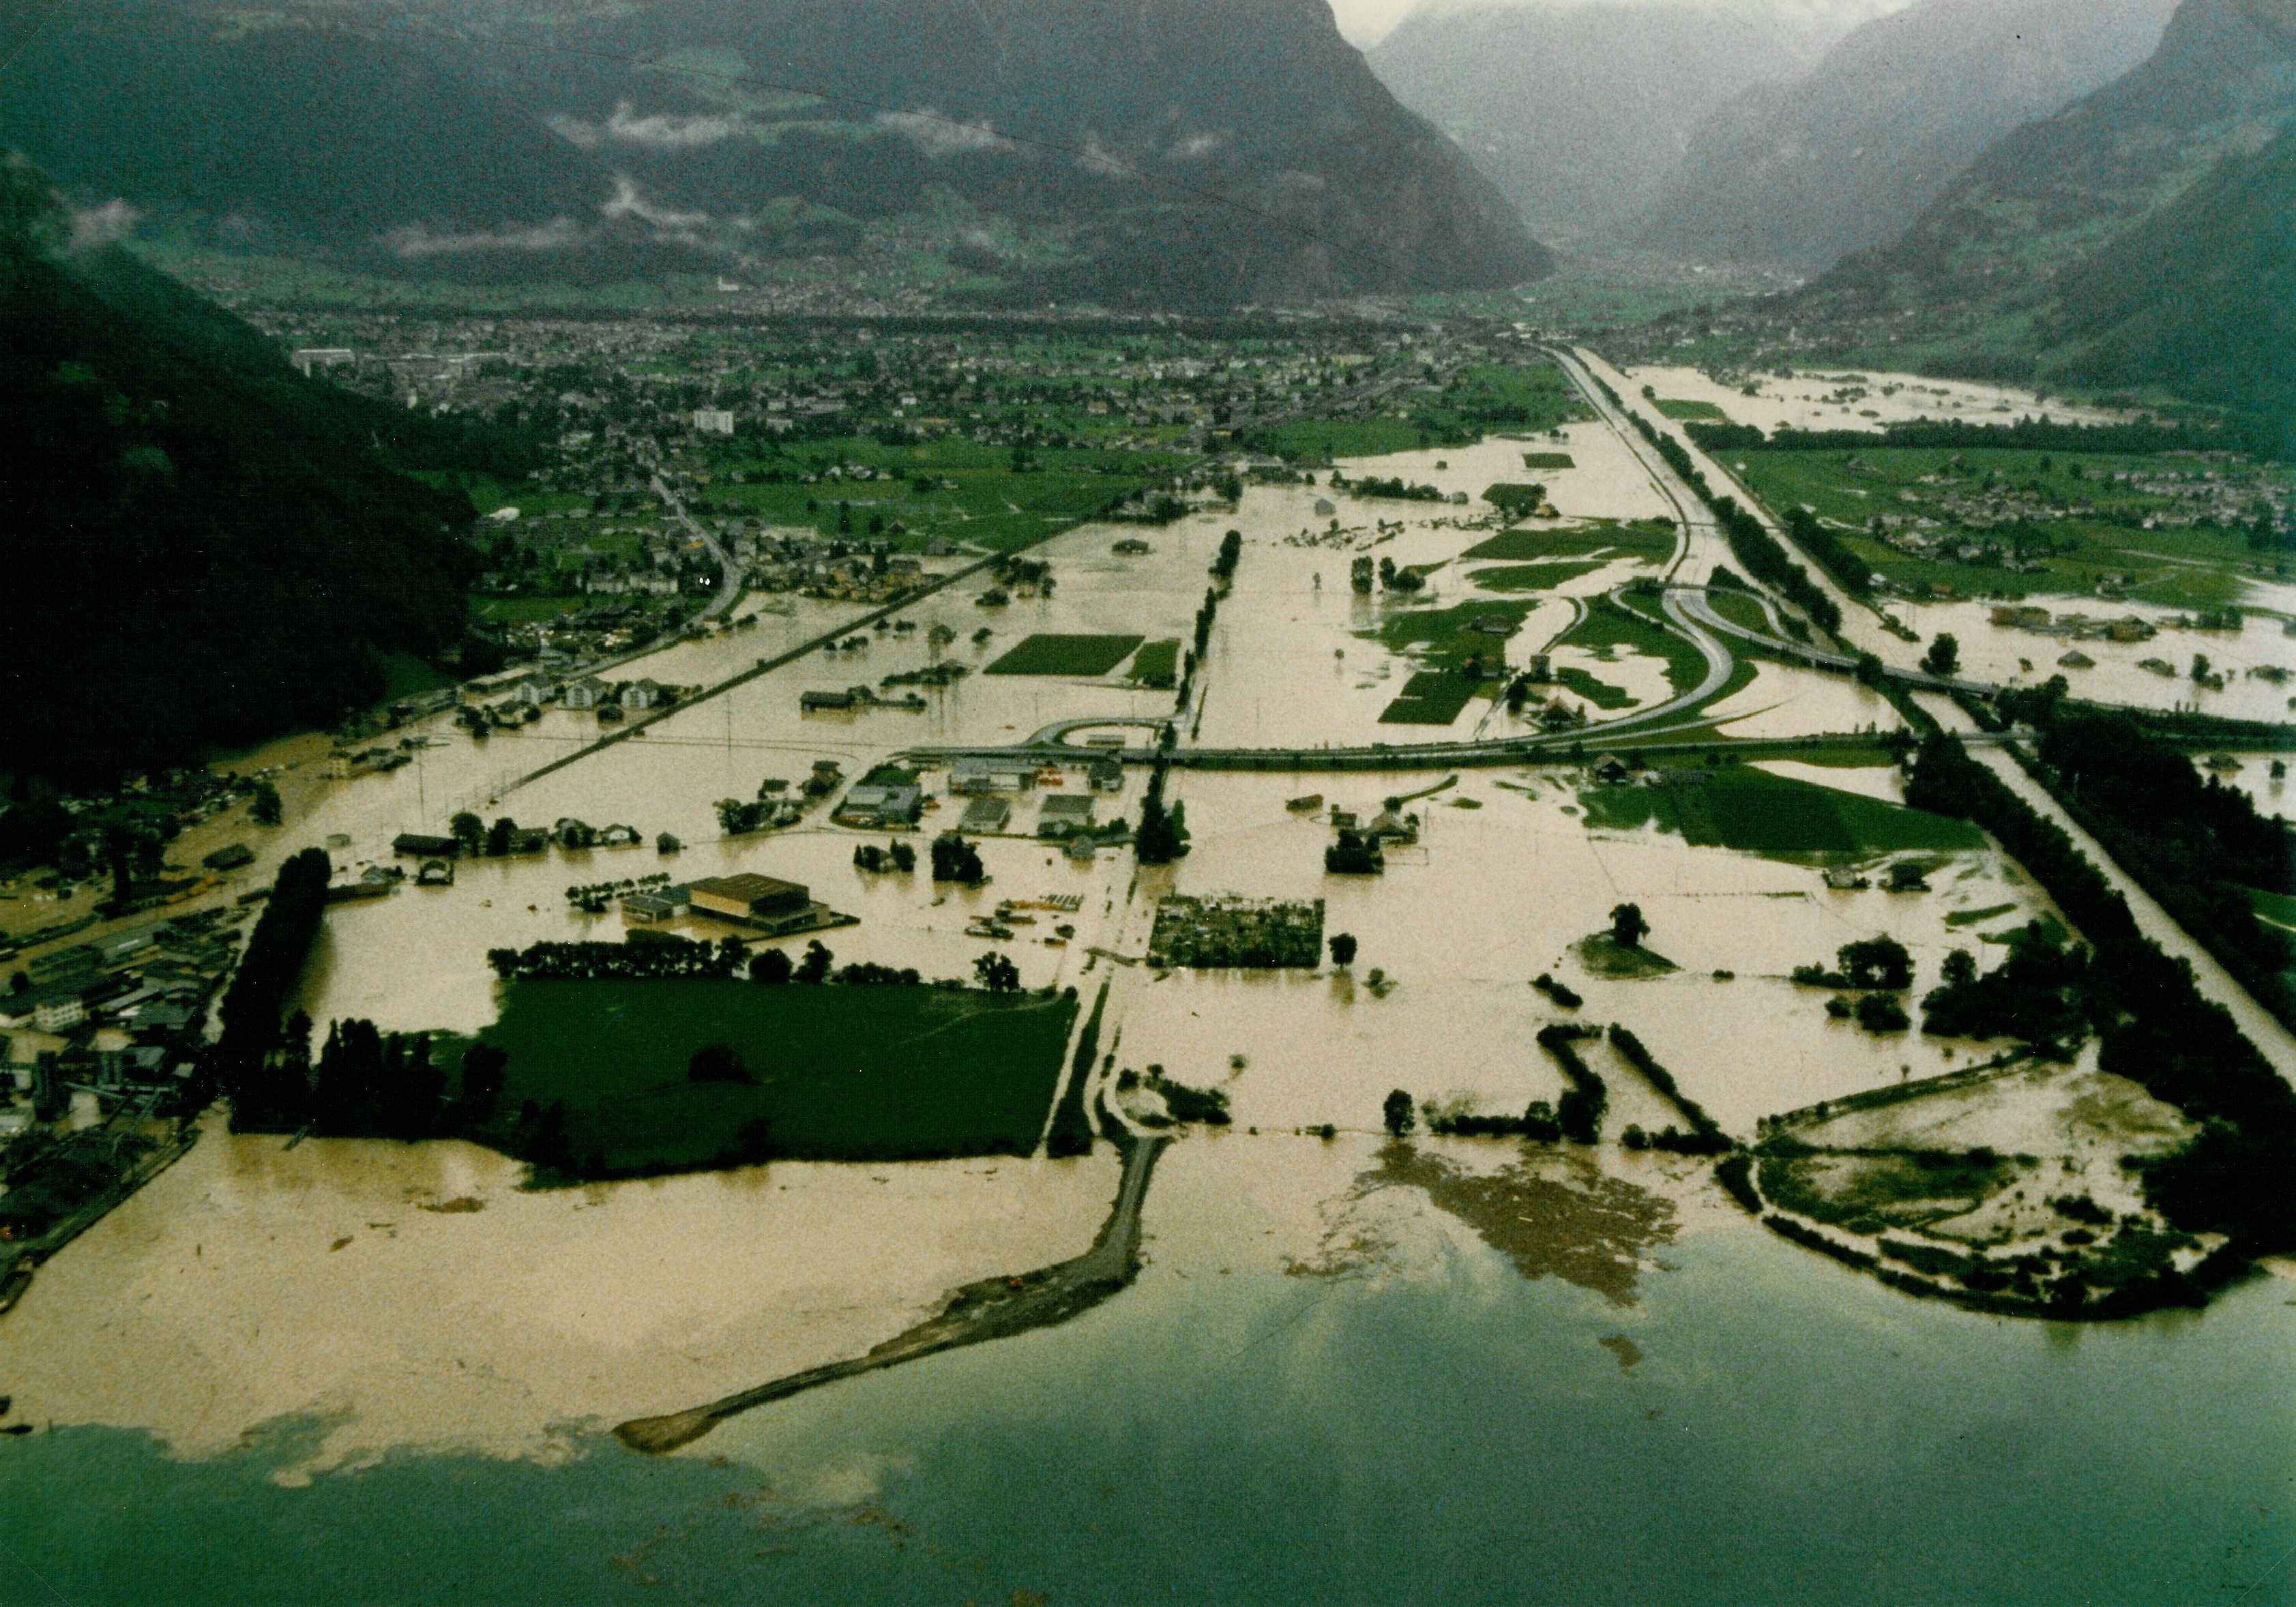 Das grosse Hochwasser von 1987: die Urnerreuss tritt unkontrolliert über die Ufer und flutet den Talboden